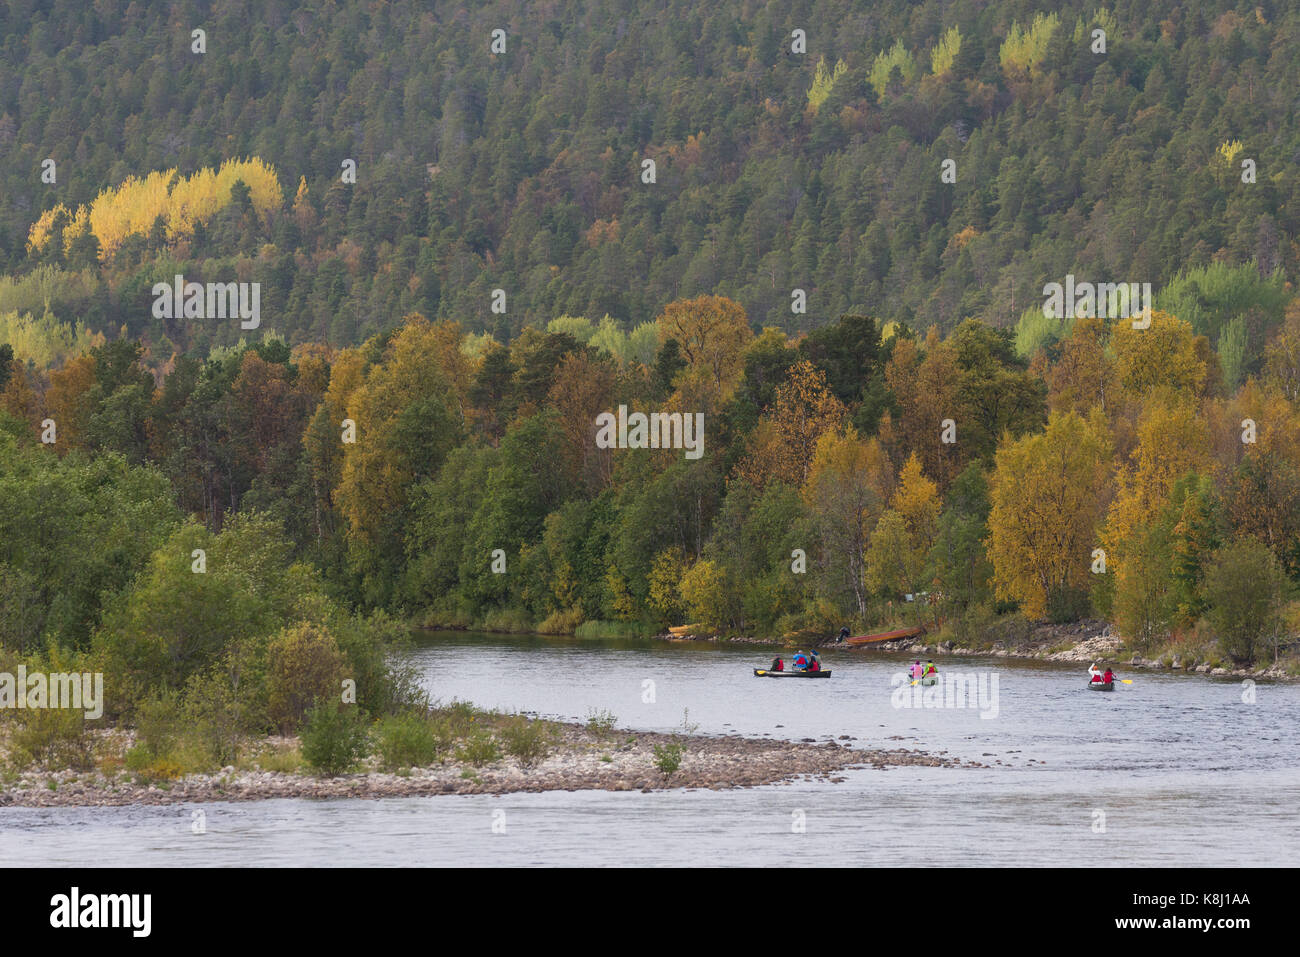 La pagaie canoë les touristes sur la rivière Alta sur une belle journée d'automne Banque D'Images